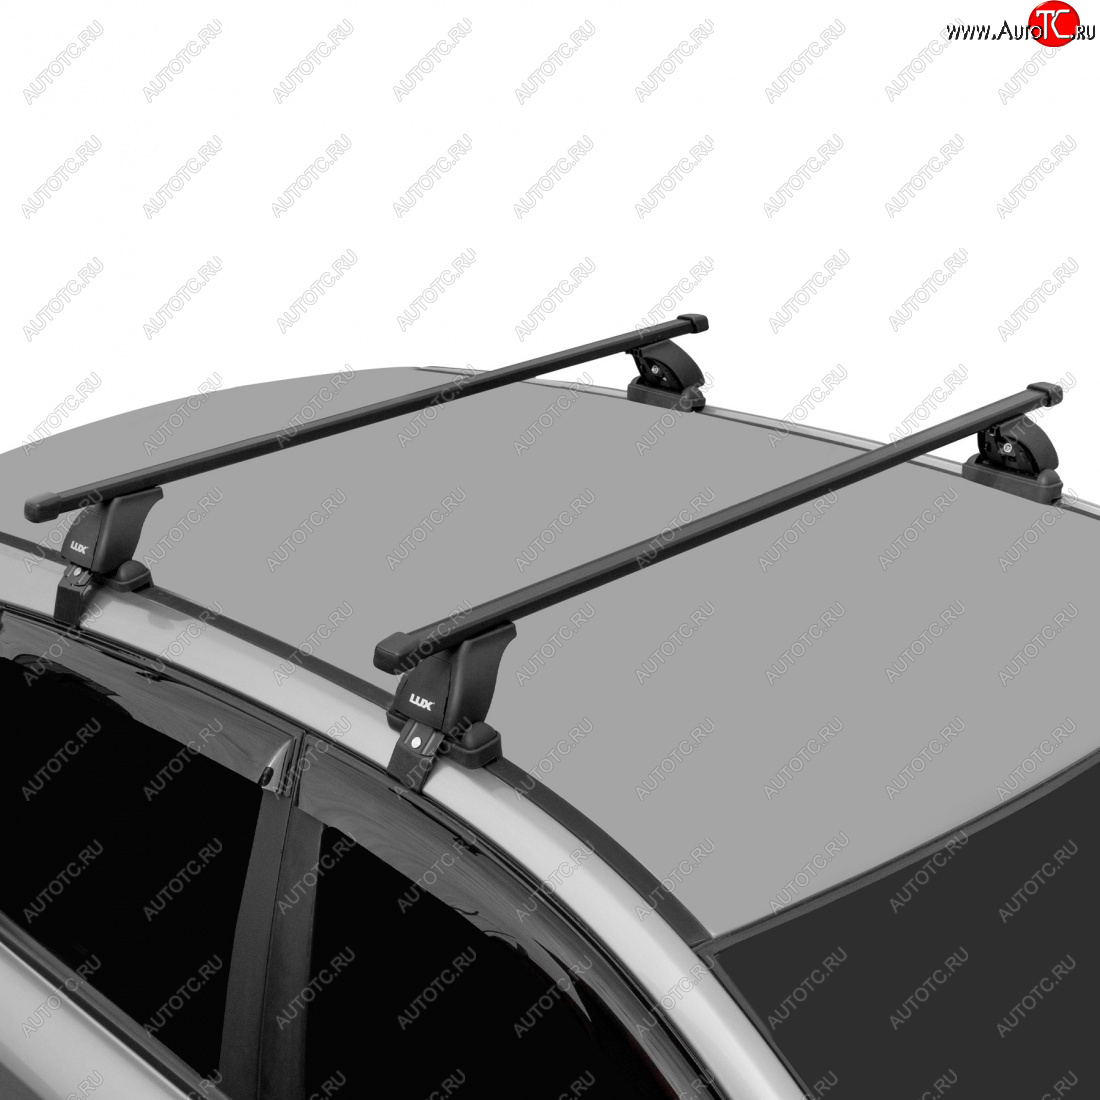 7 297 р. Багажник на крышу без рейлингов в сборе LUX Volkswagen Passat B6 седан (2005-2011) (поперечины прямоугольные 1.2 (цвет черный))